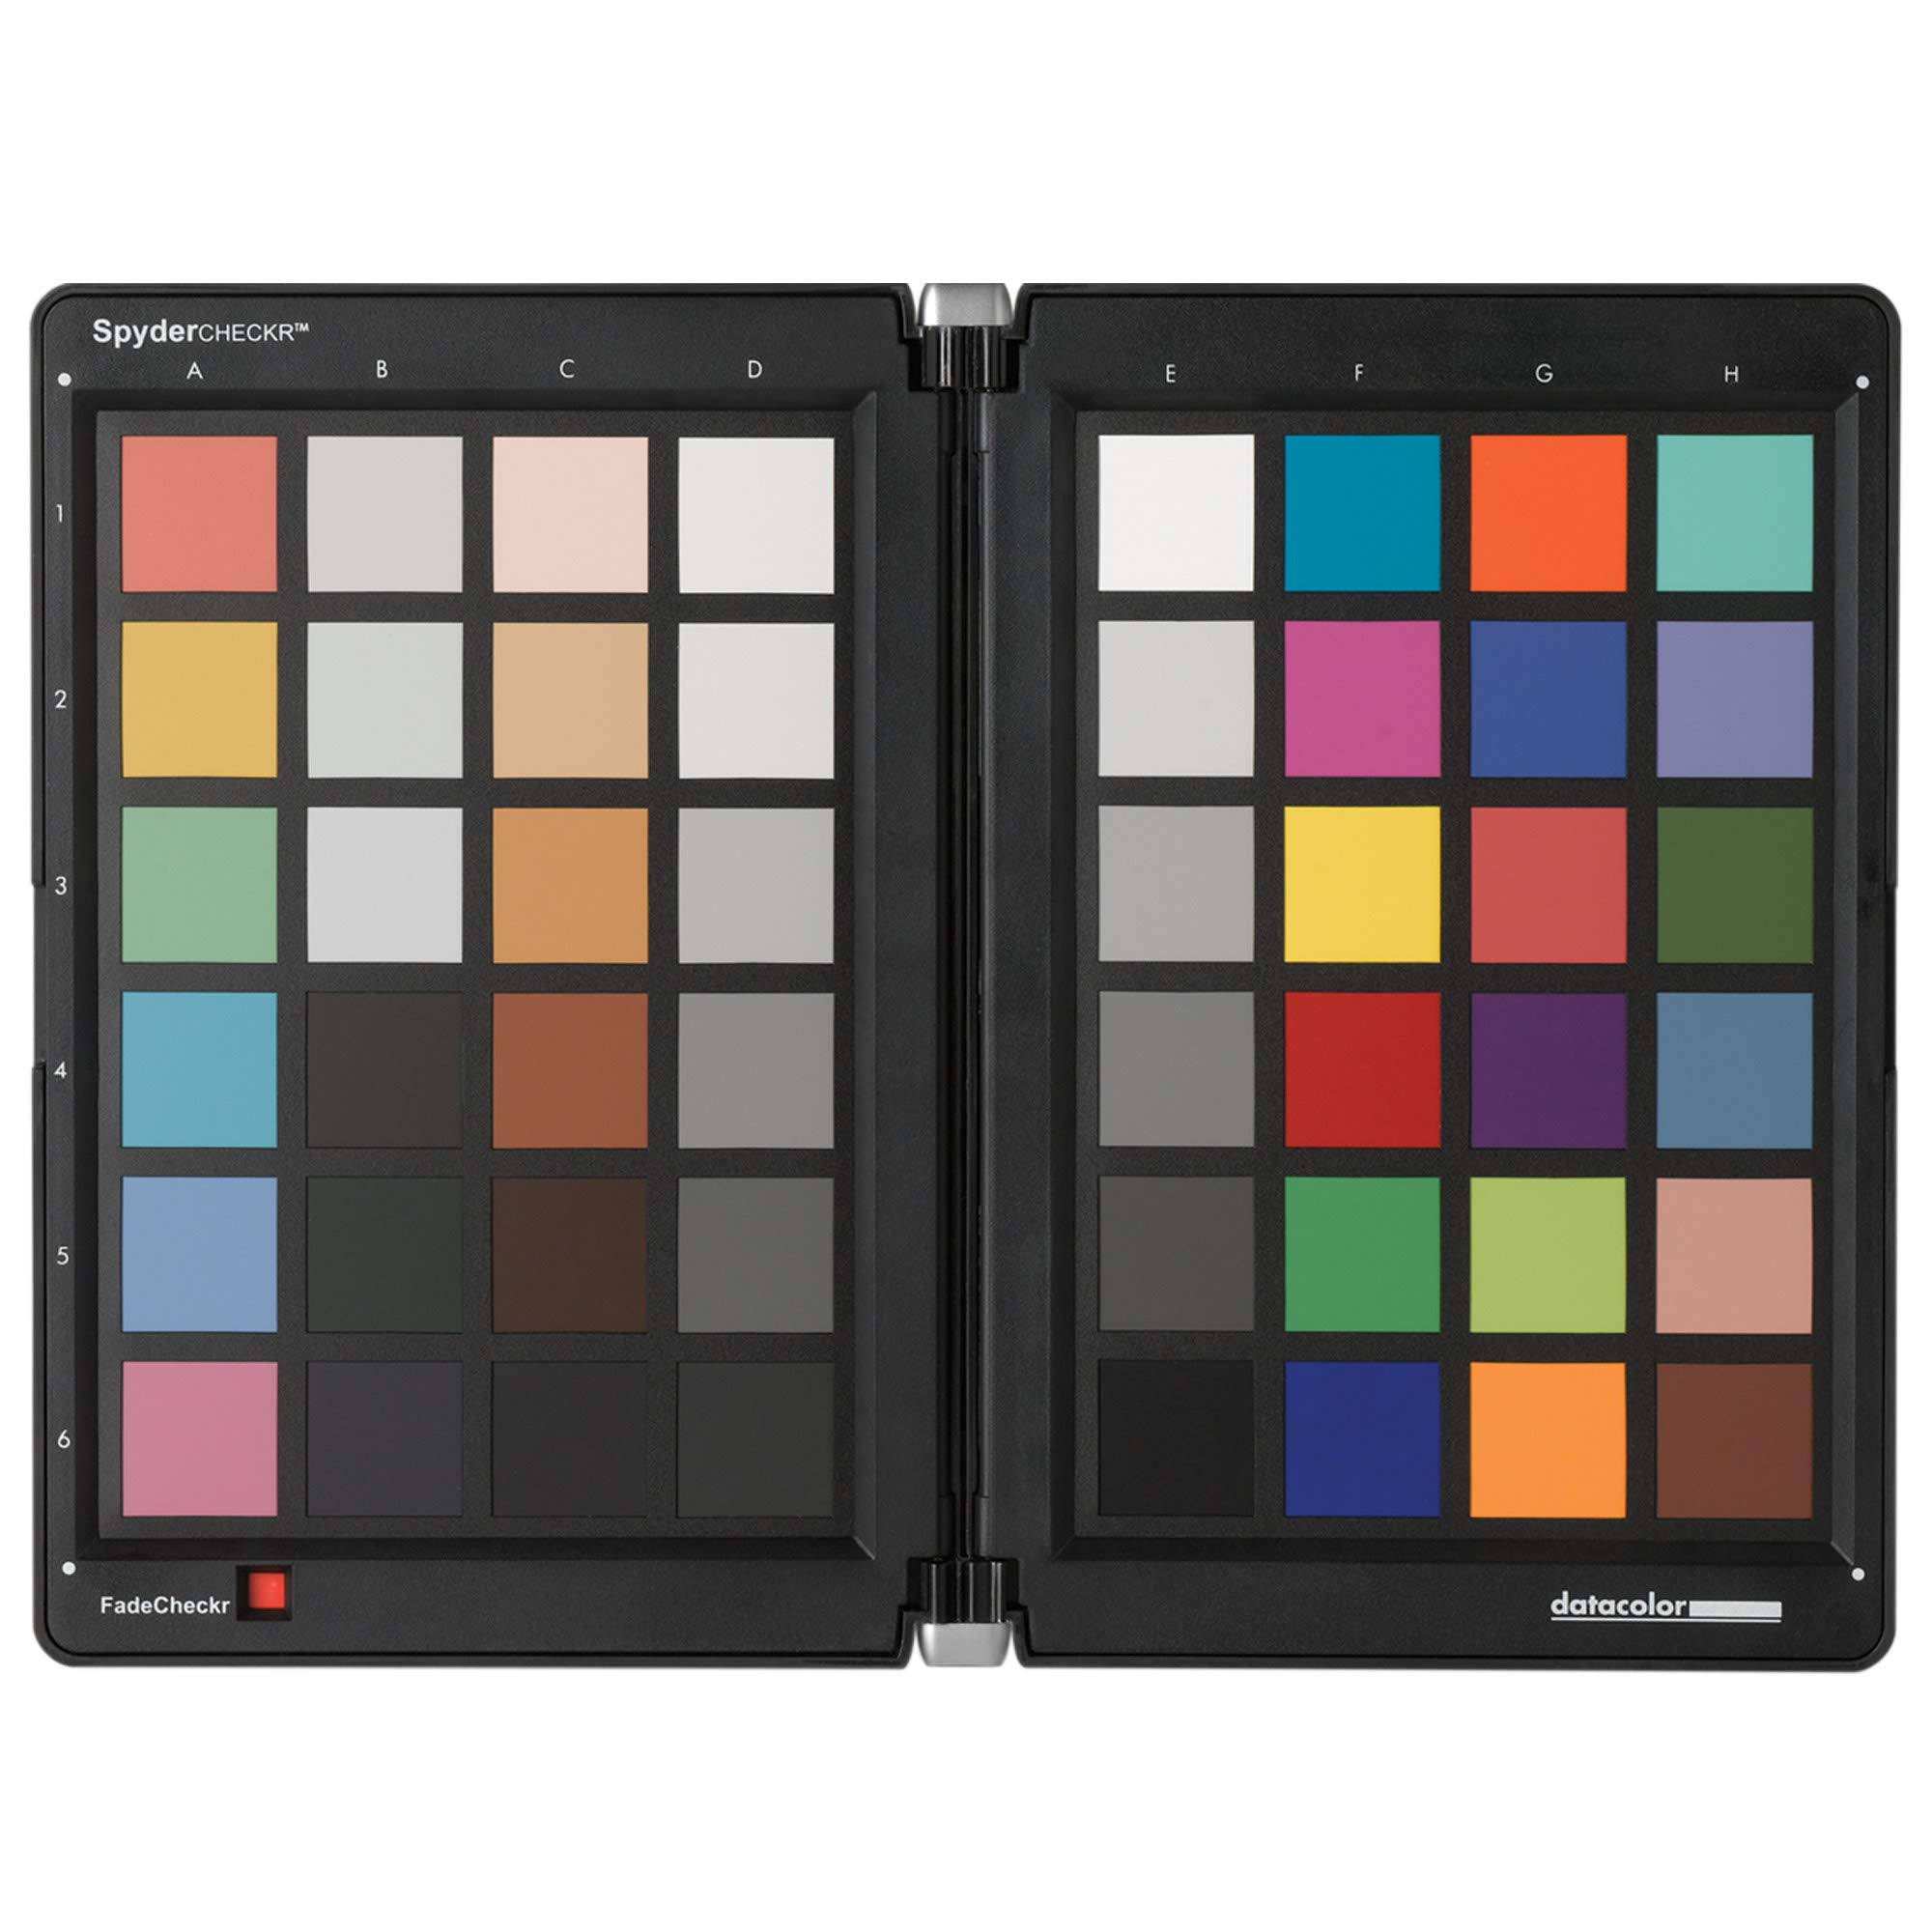 Datacolor SpyderCheckr: Farbkarte zur Kamerakalibrierung incl. Software zur Berechnung von Farbkorrektur-Presets. Profi-Version mit 48 Farbfeldern sowie vollformatige Graukarte auf der Rückseite